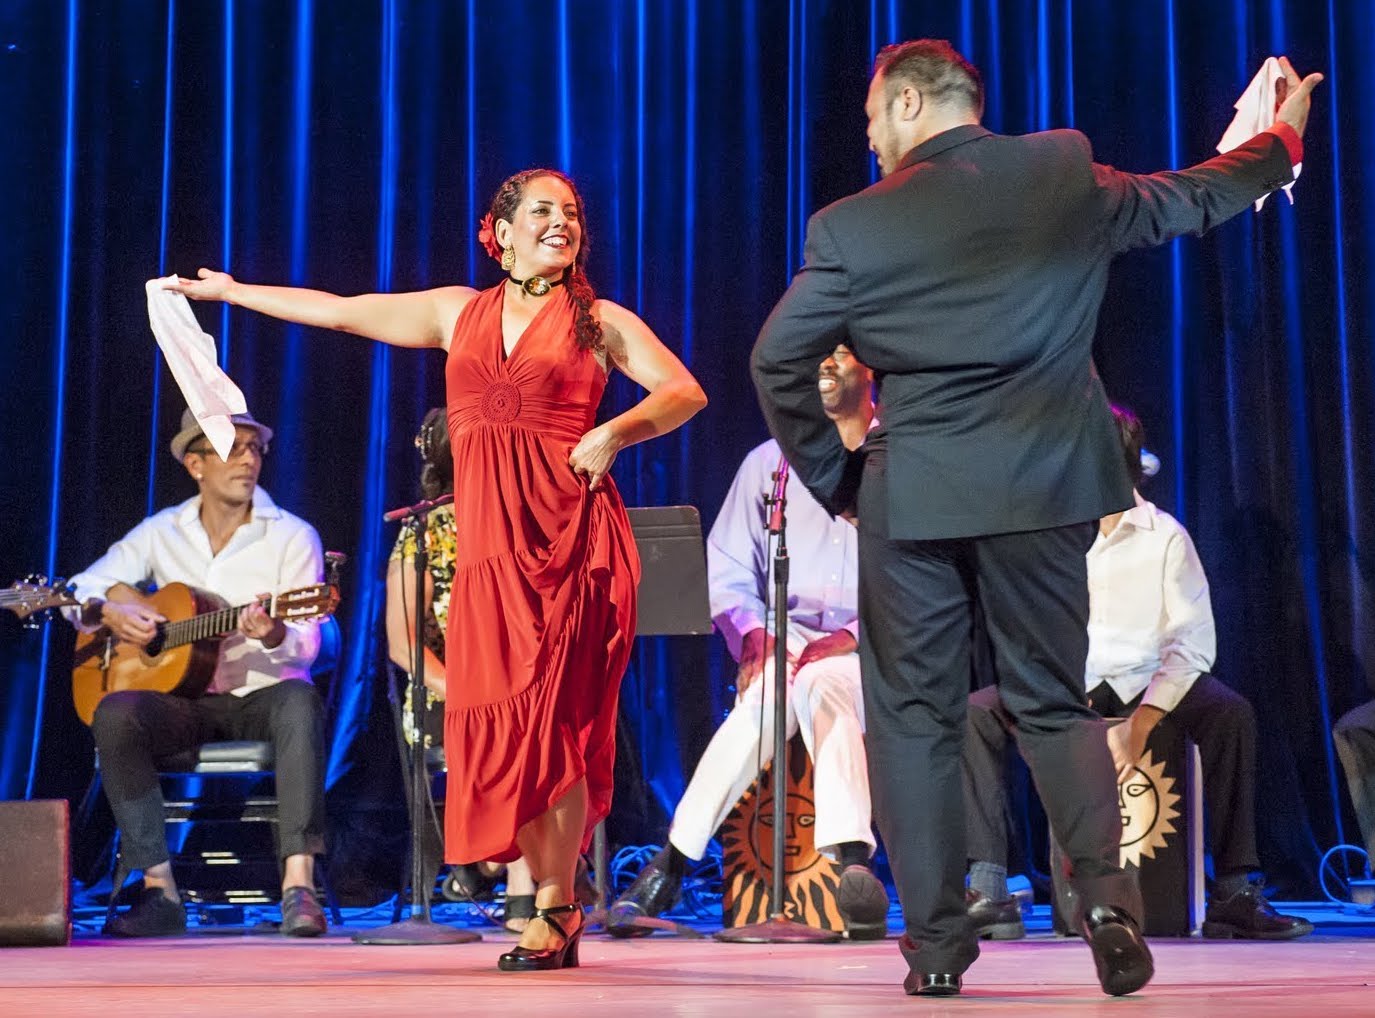 Monica Rojas-Stewart dances in a red dress